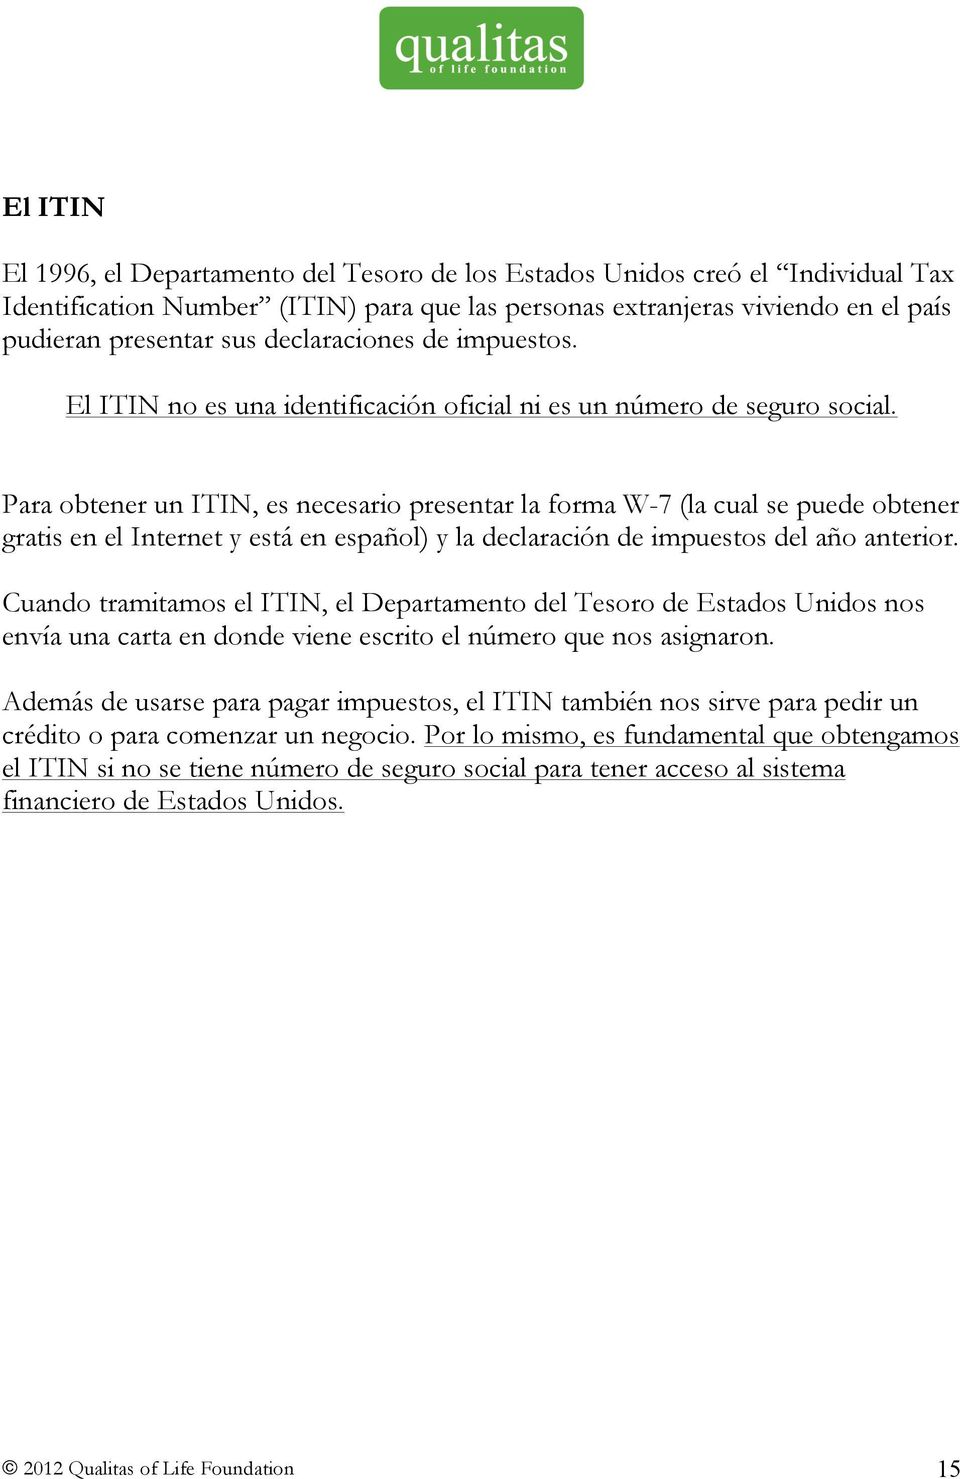 Para obtener un ITIN, es necesario presentar la forma W-7 (la cual se puede obtener gratis en el Internet y está en español) y la declaración de impuestos del año anterior.